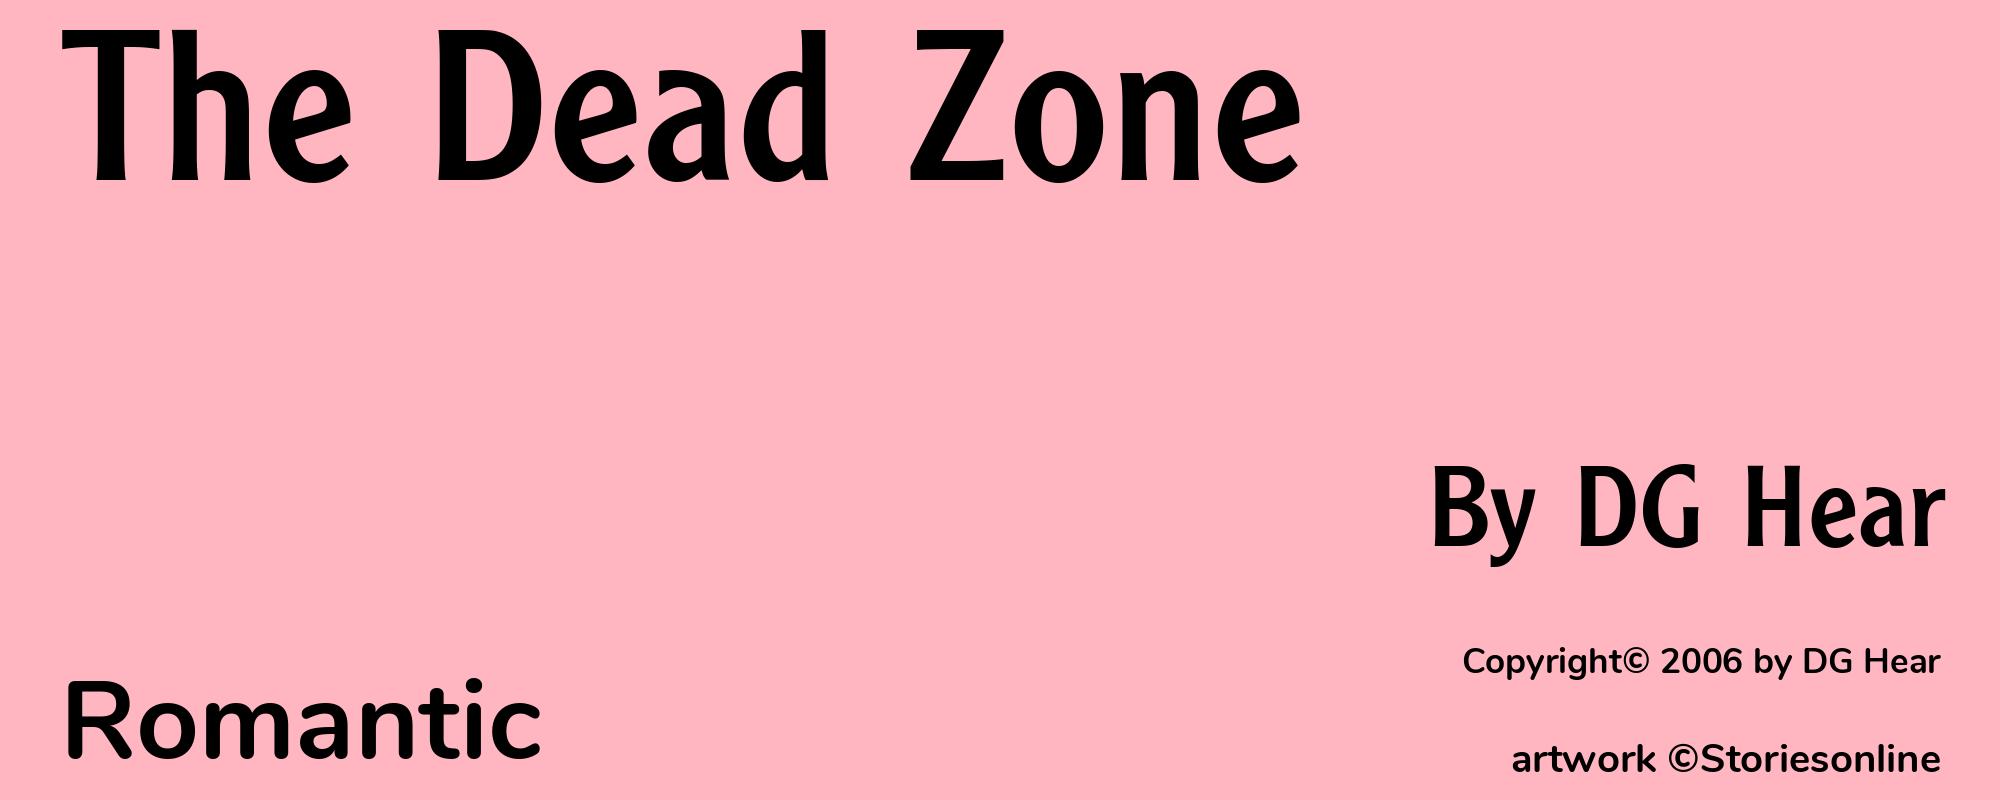 The Dead Zone - Cover